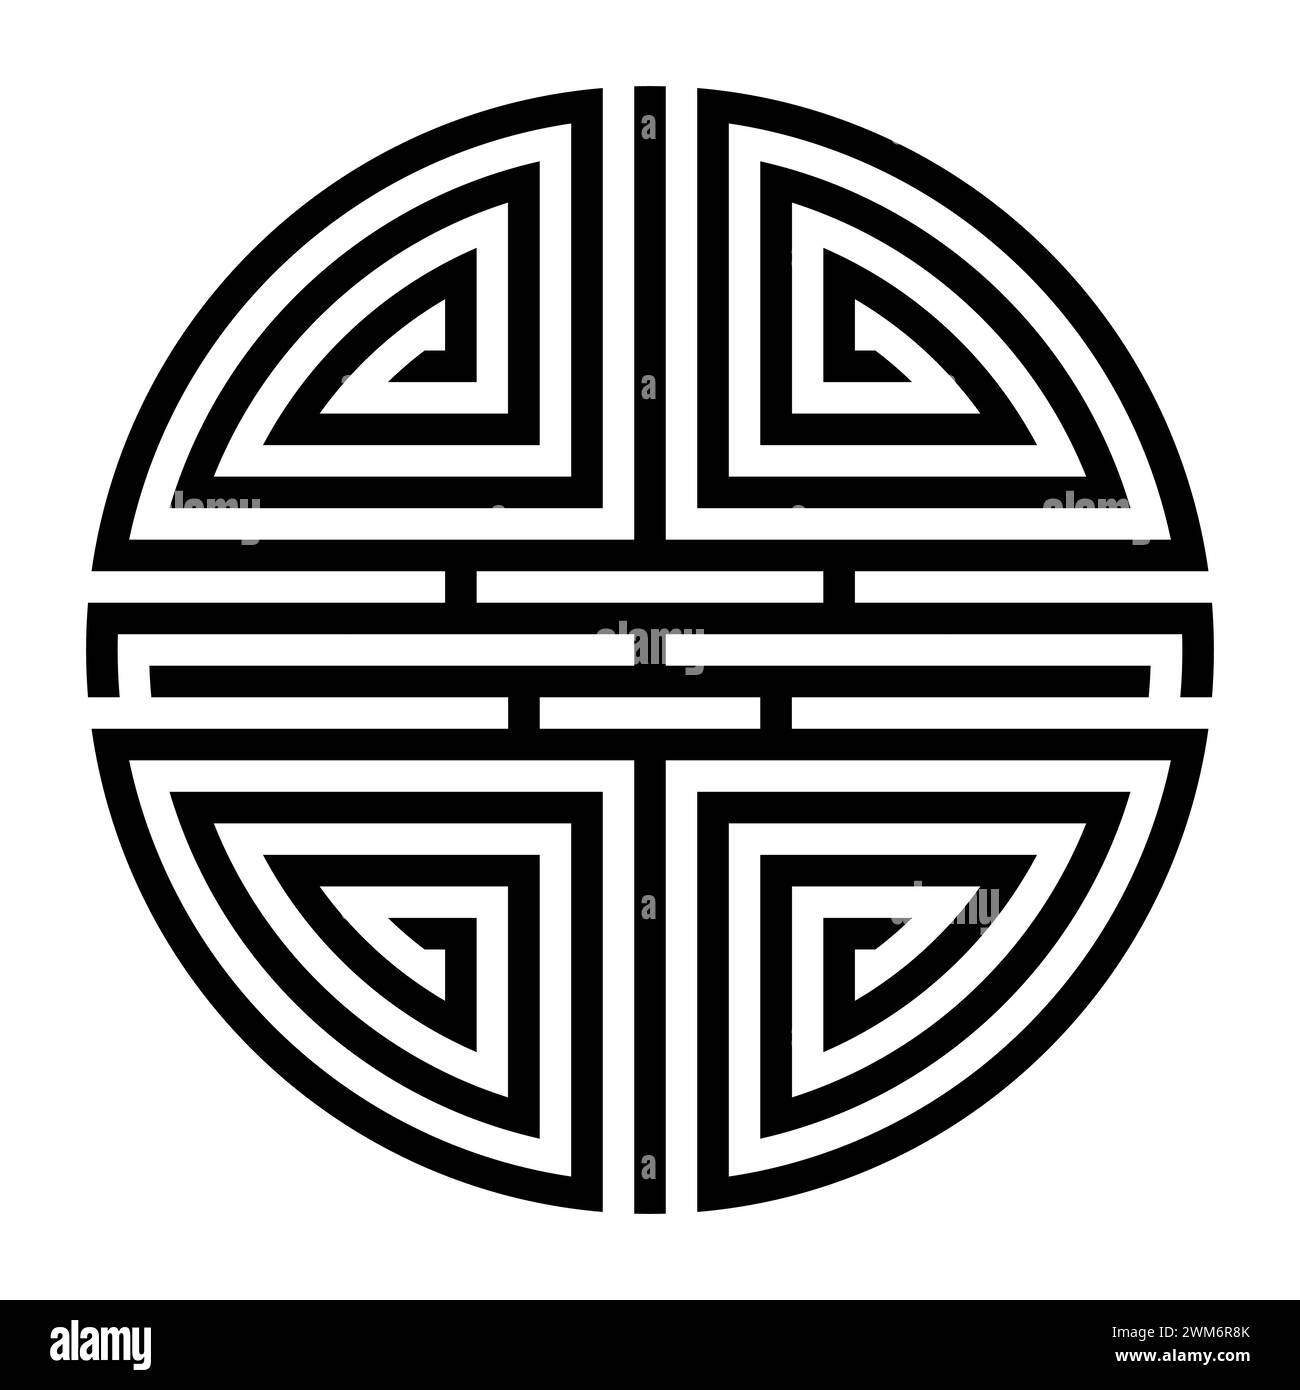 Shou, Variation des chinesischen Symbols für Langlebigkeit. Ein langes Leben ist ein Segen im traditionellen chinesischen Denken, symbolisiert durch Shou Xing. Stockfoto